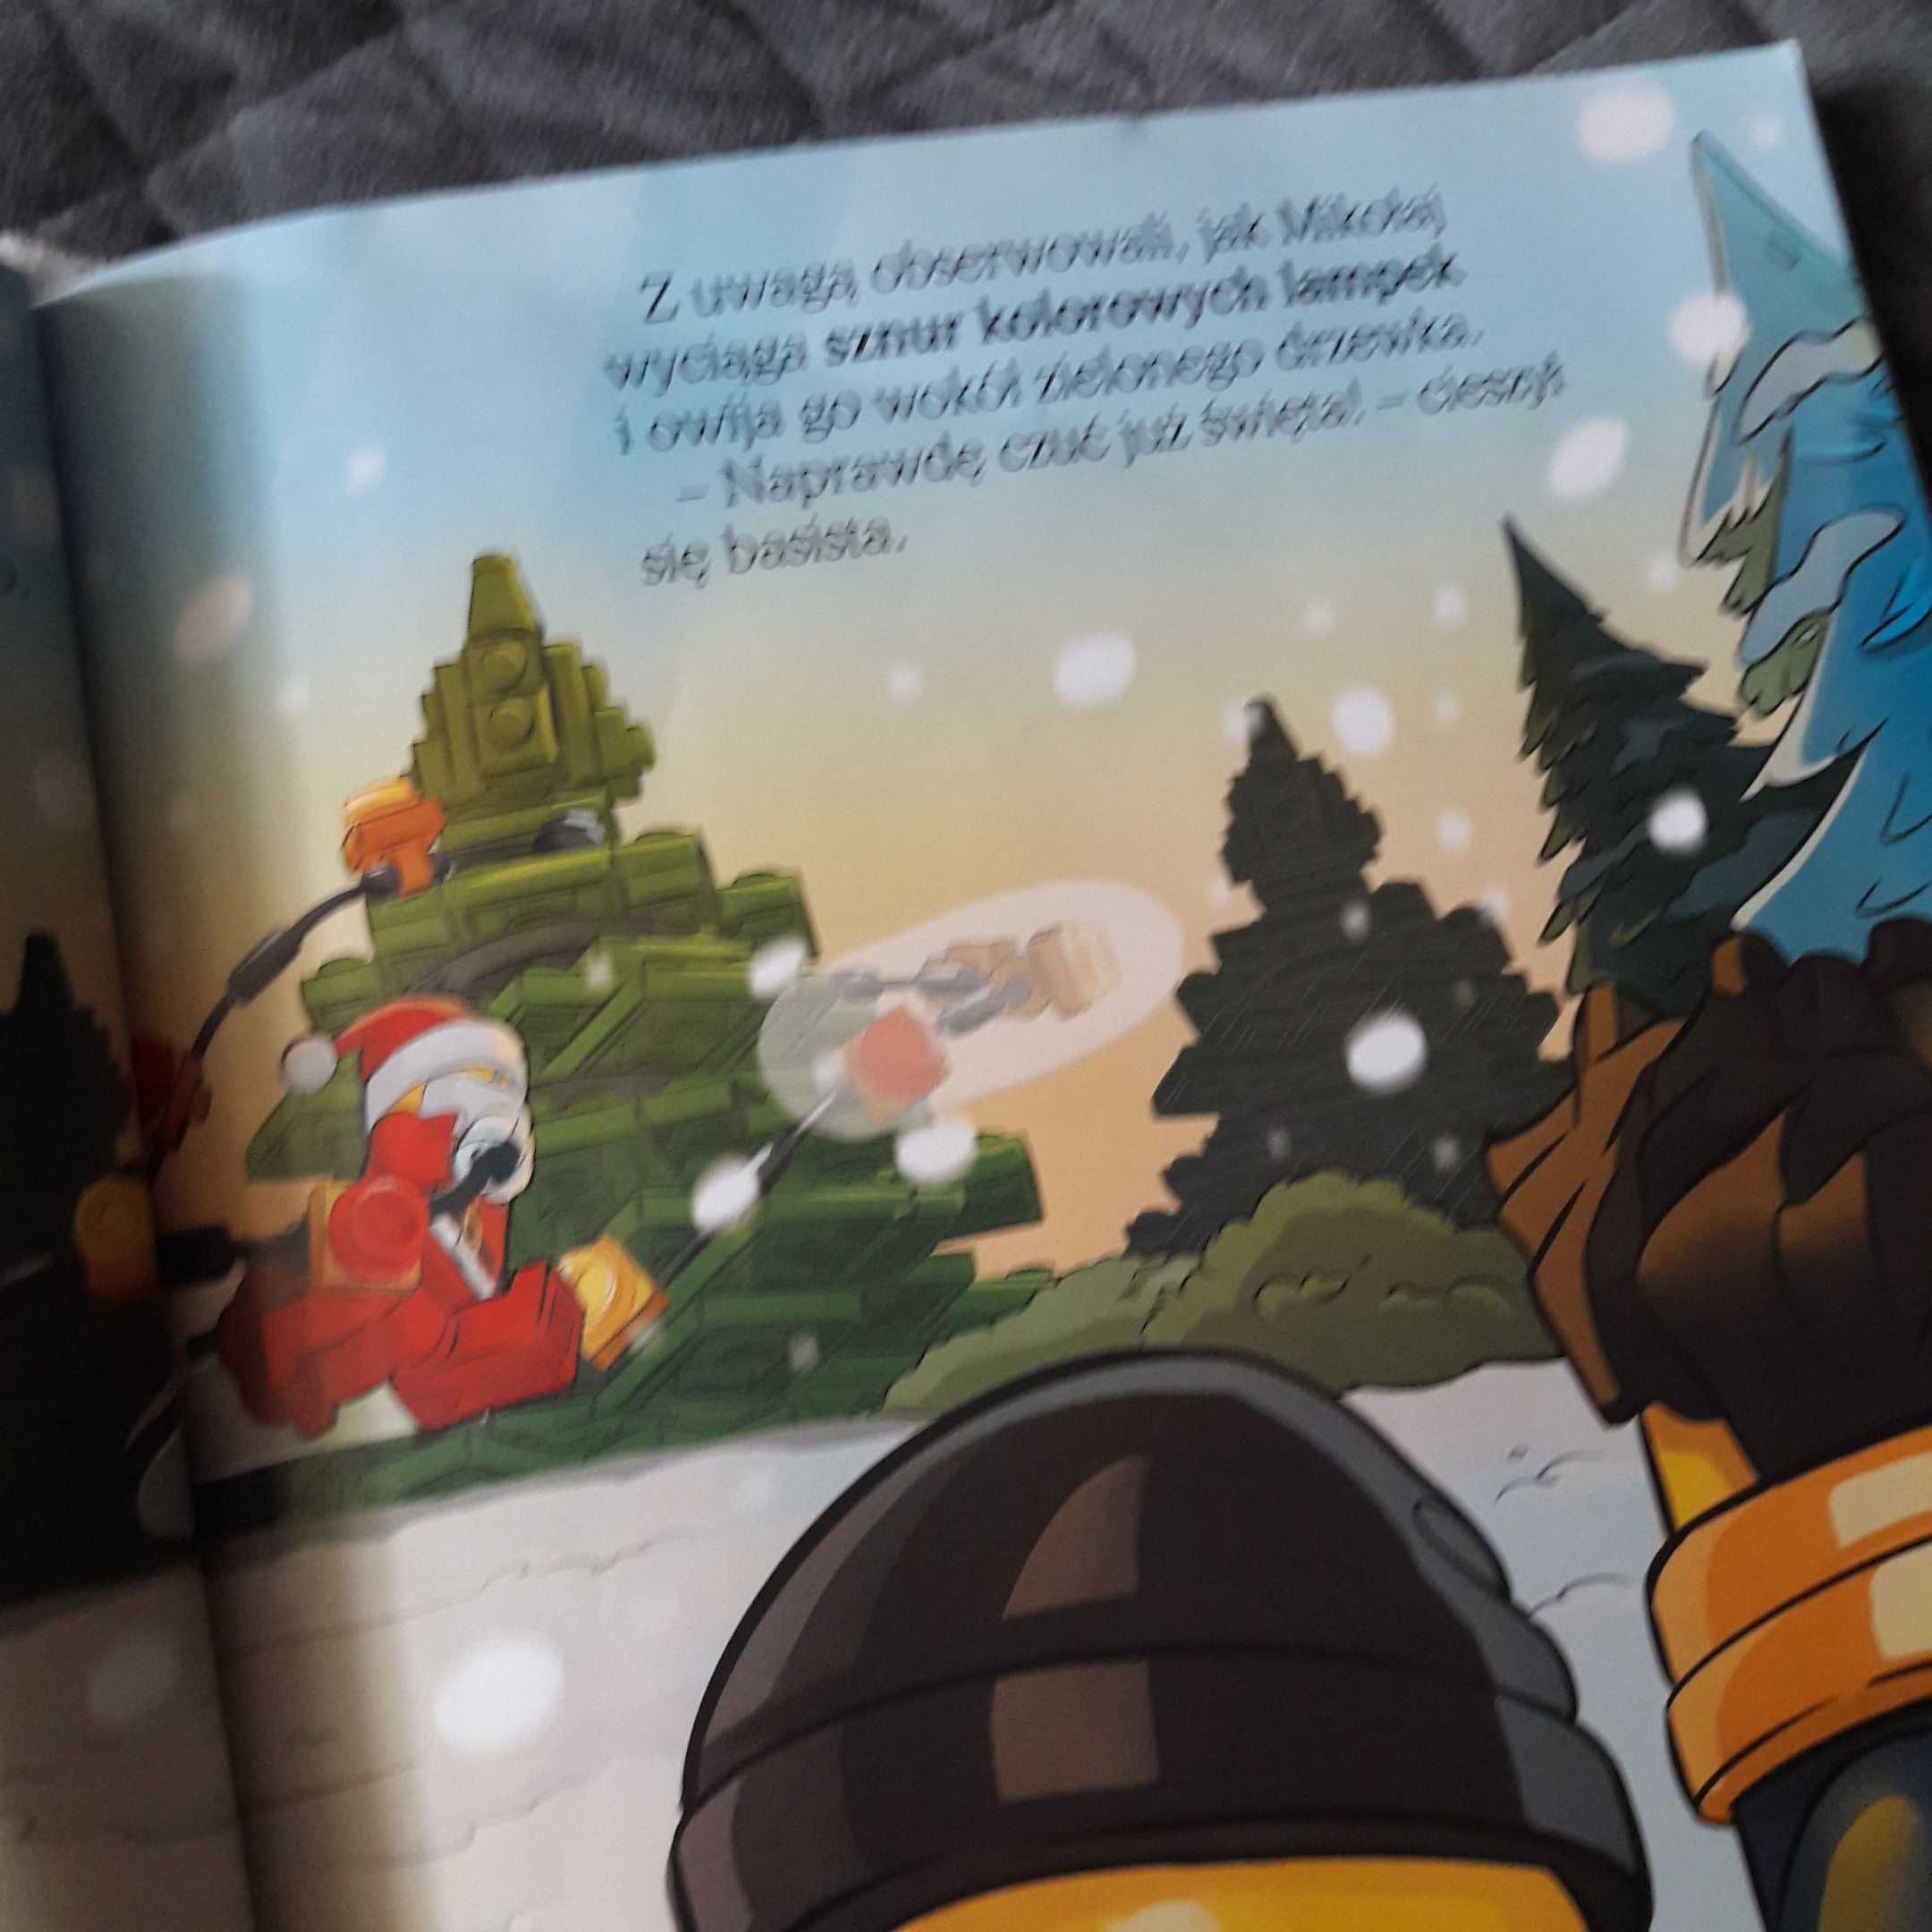 Książka LEGO Wyjątkowe Święta z naklejkami